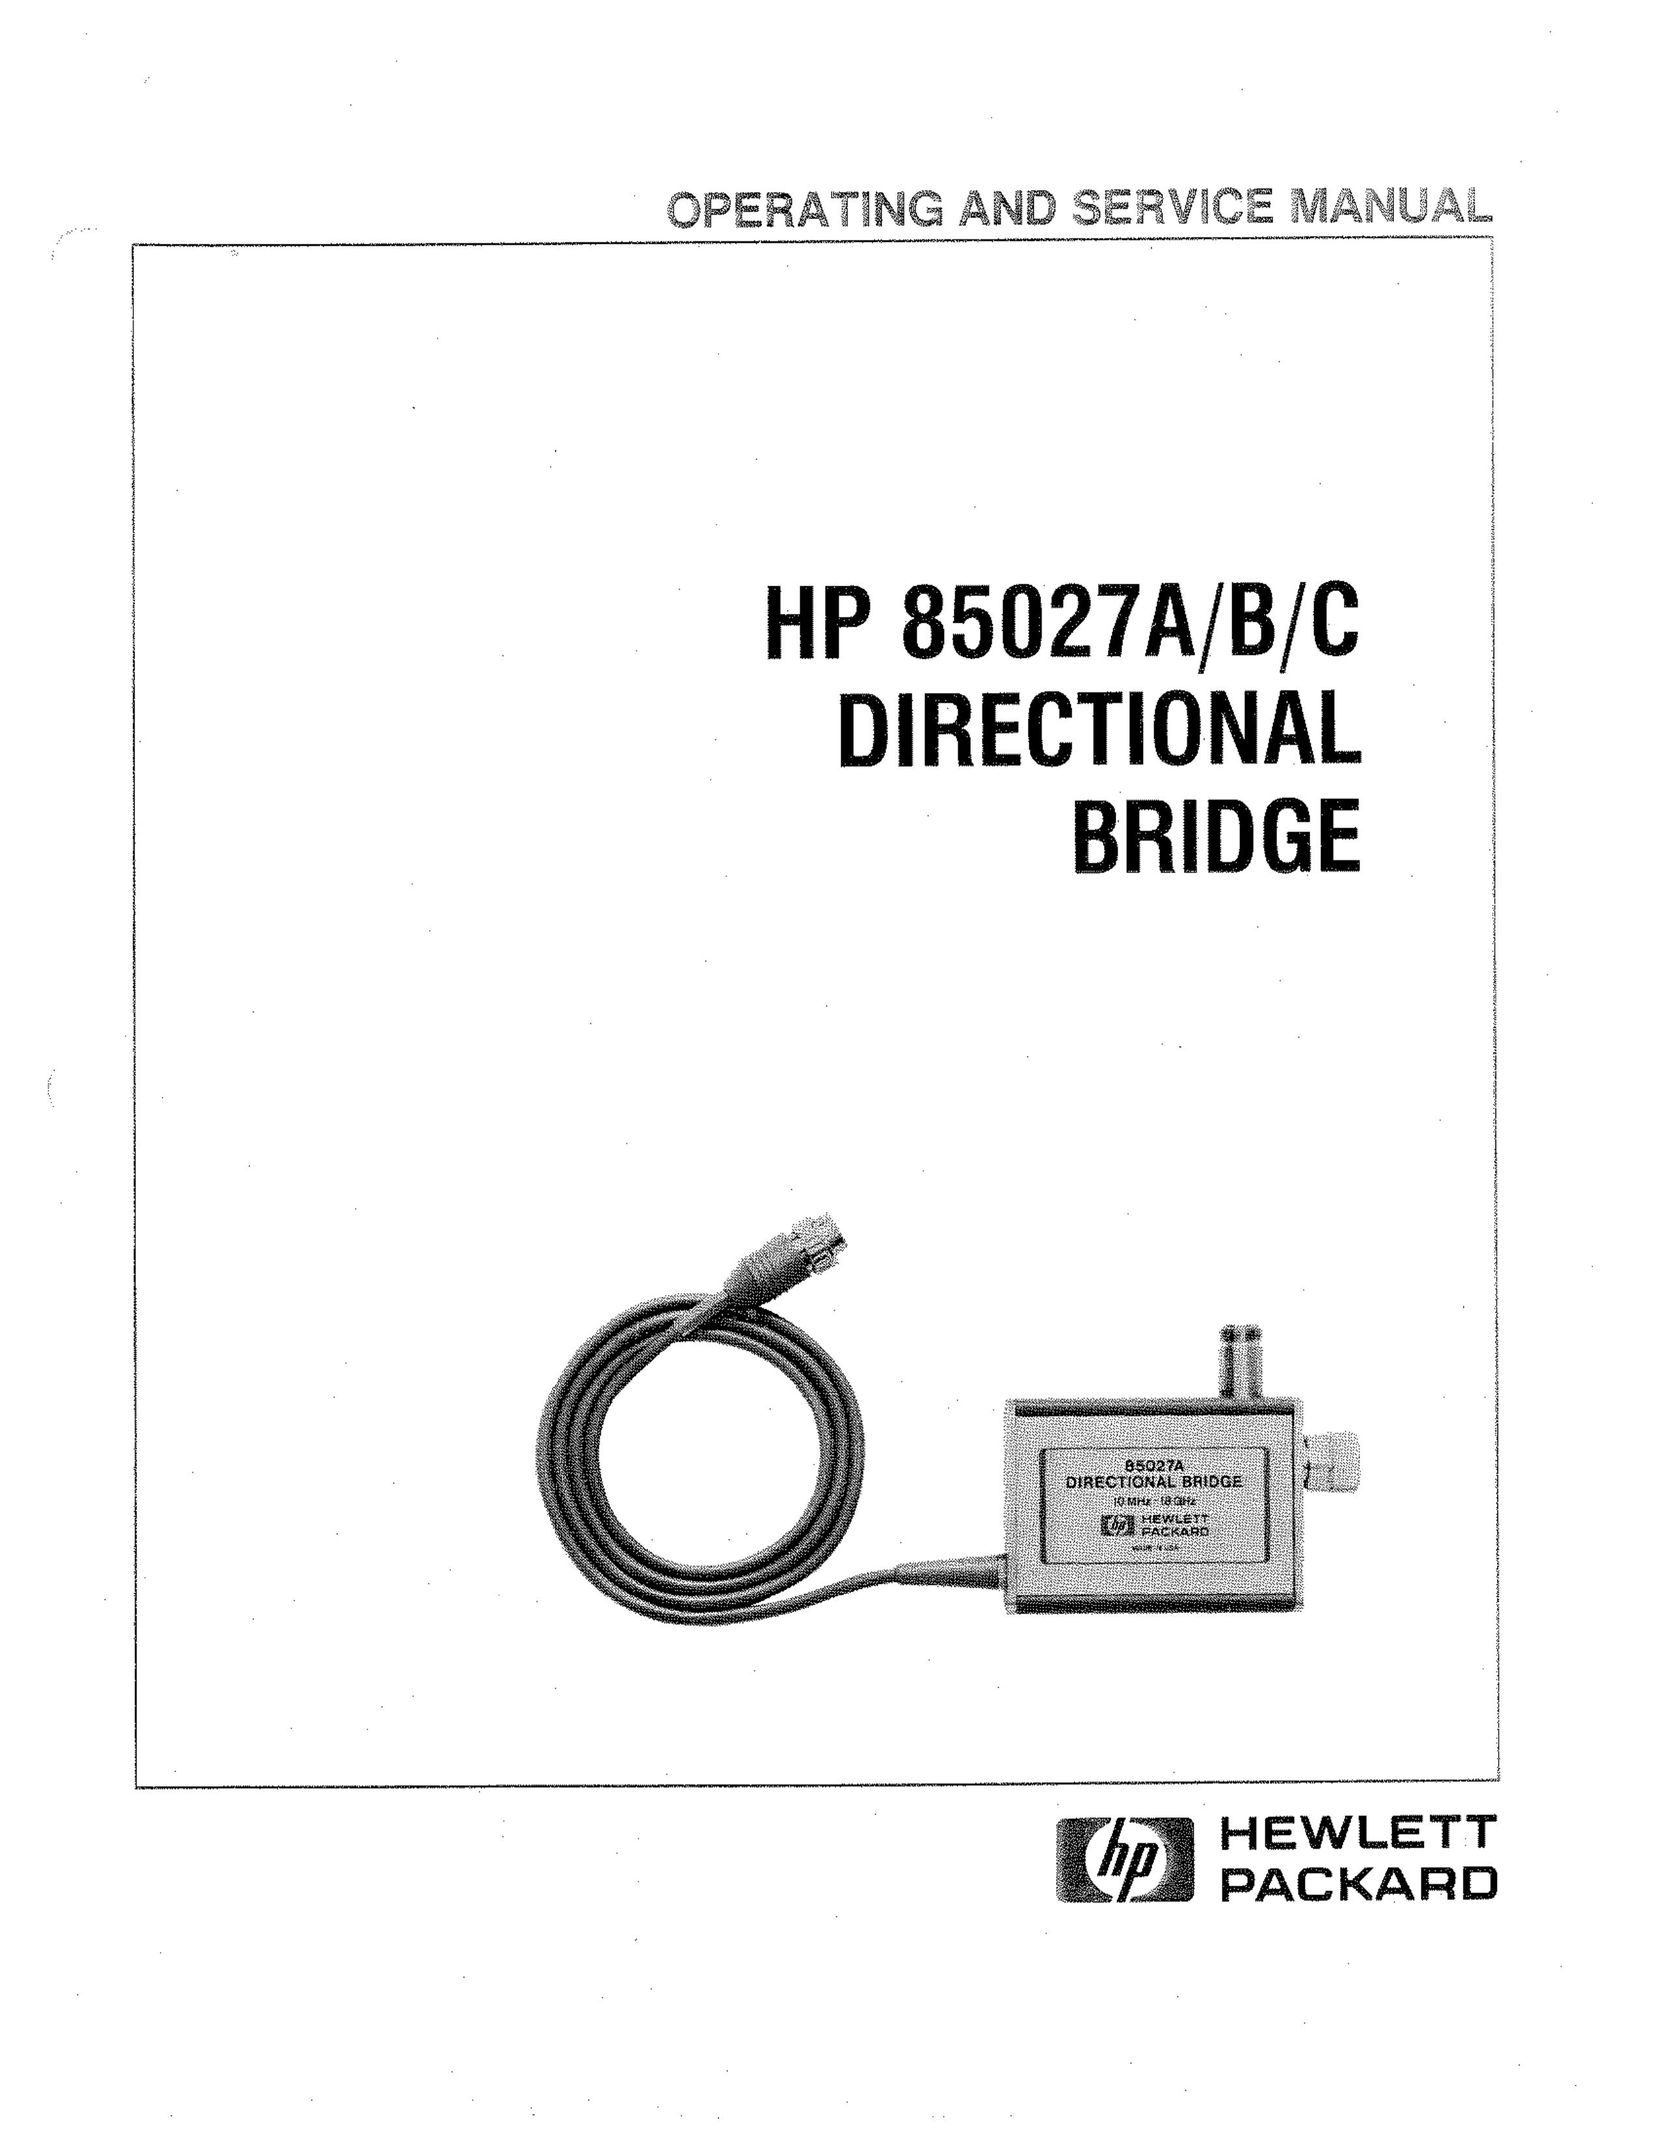 HP (Hewlett-Packard) 85027 A Network Router User Manual